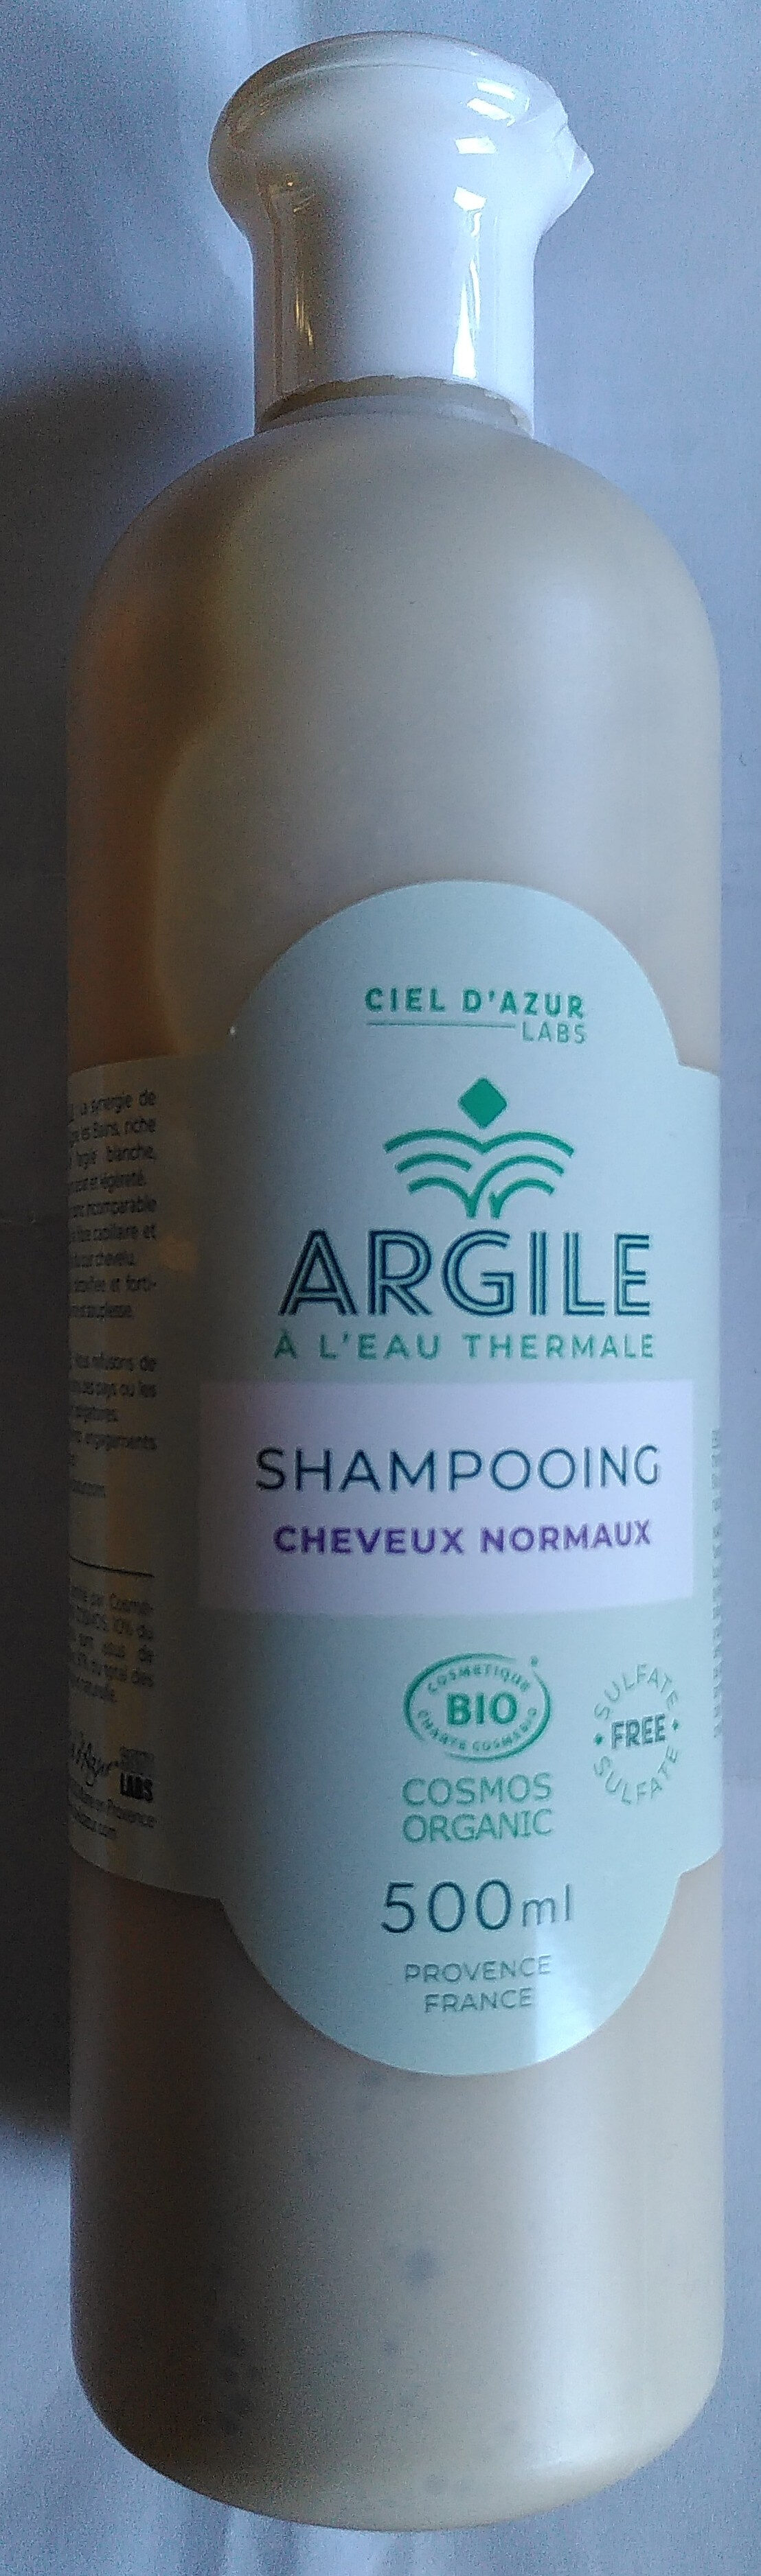 Shampooing cheveux normaux argile à l'eau thermale - Produit - fr